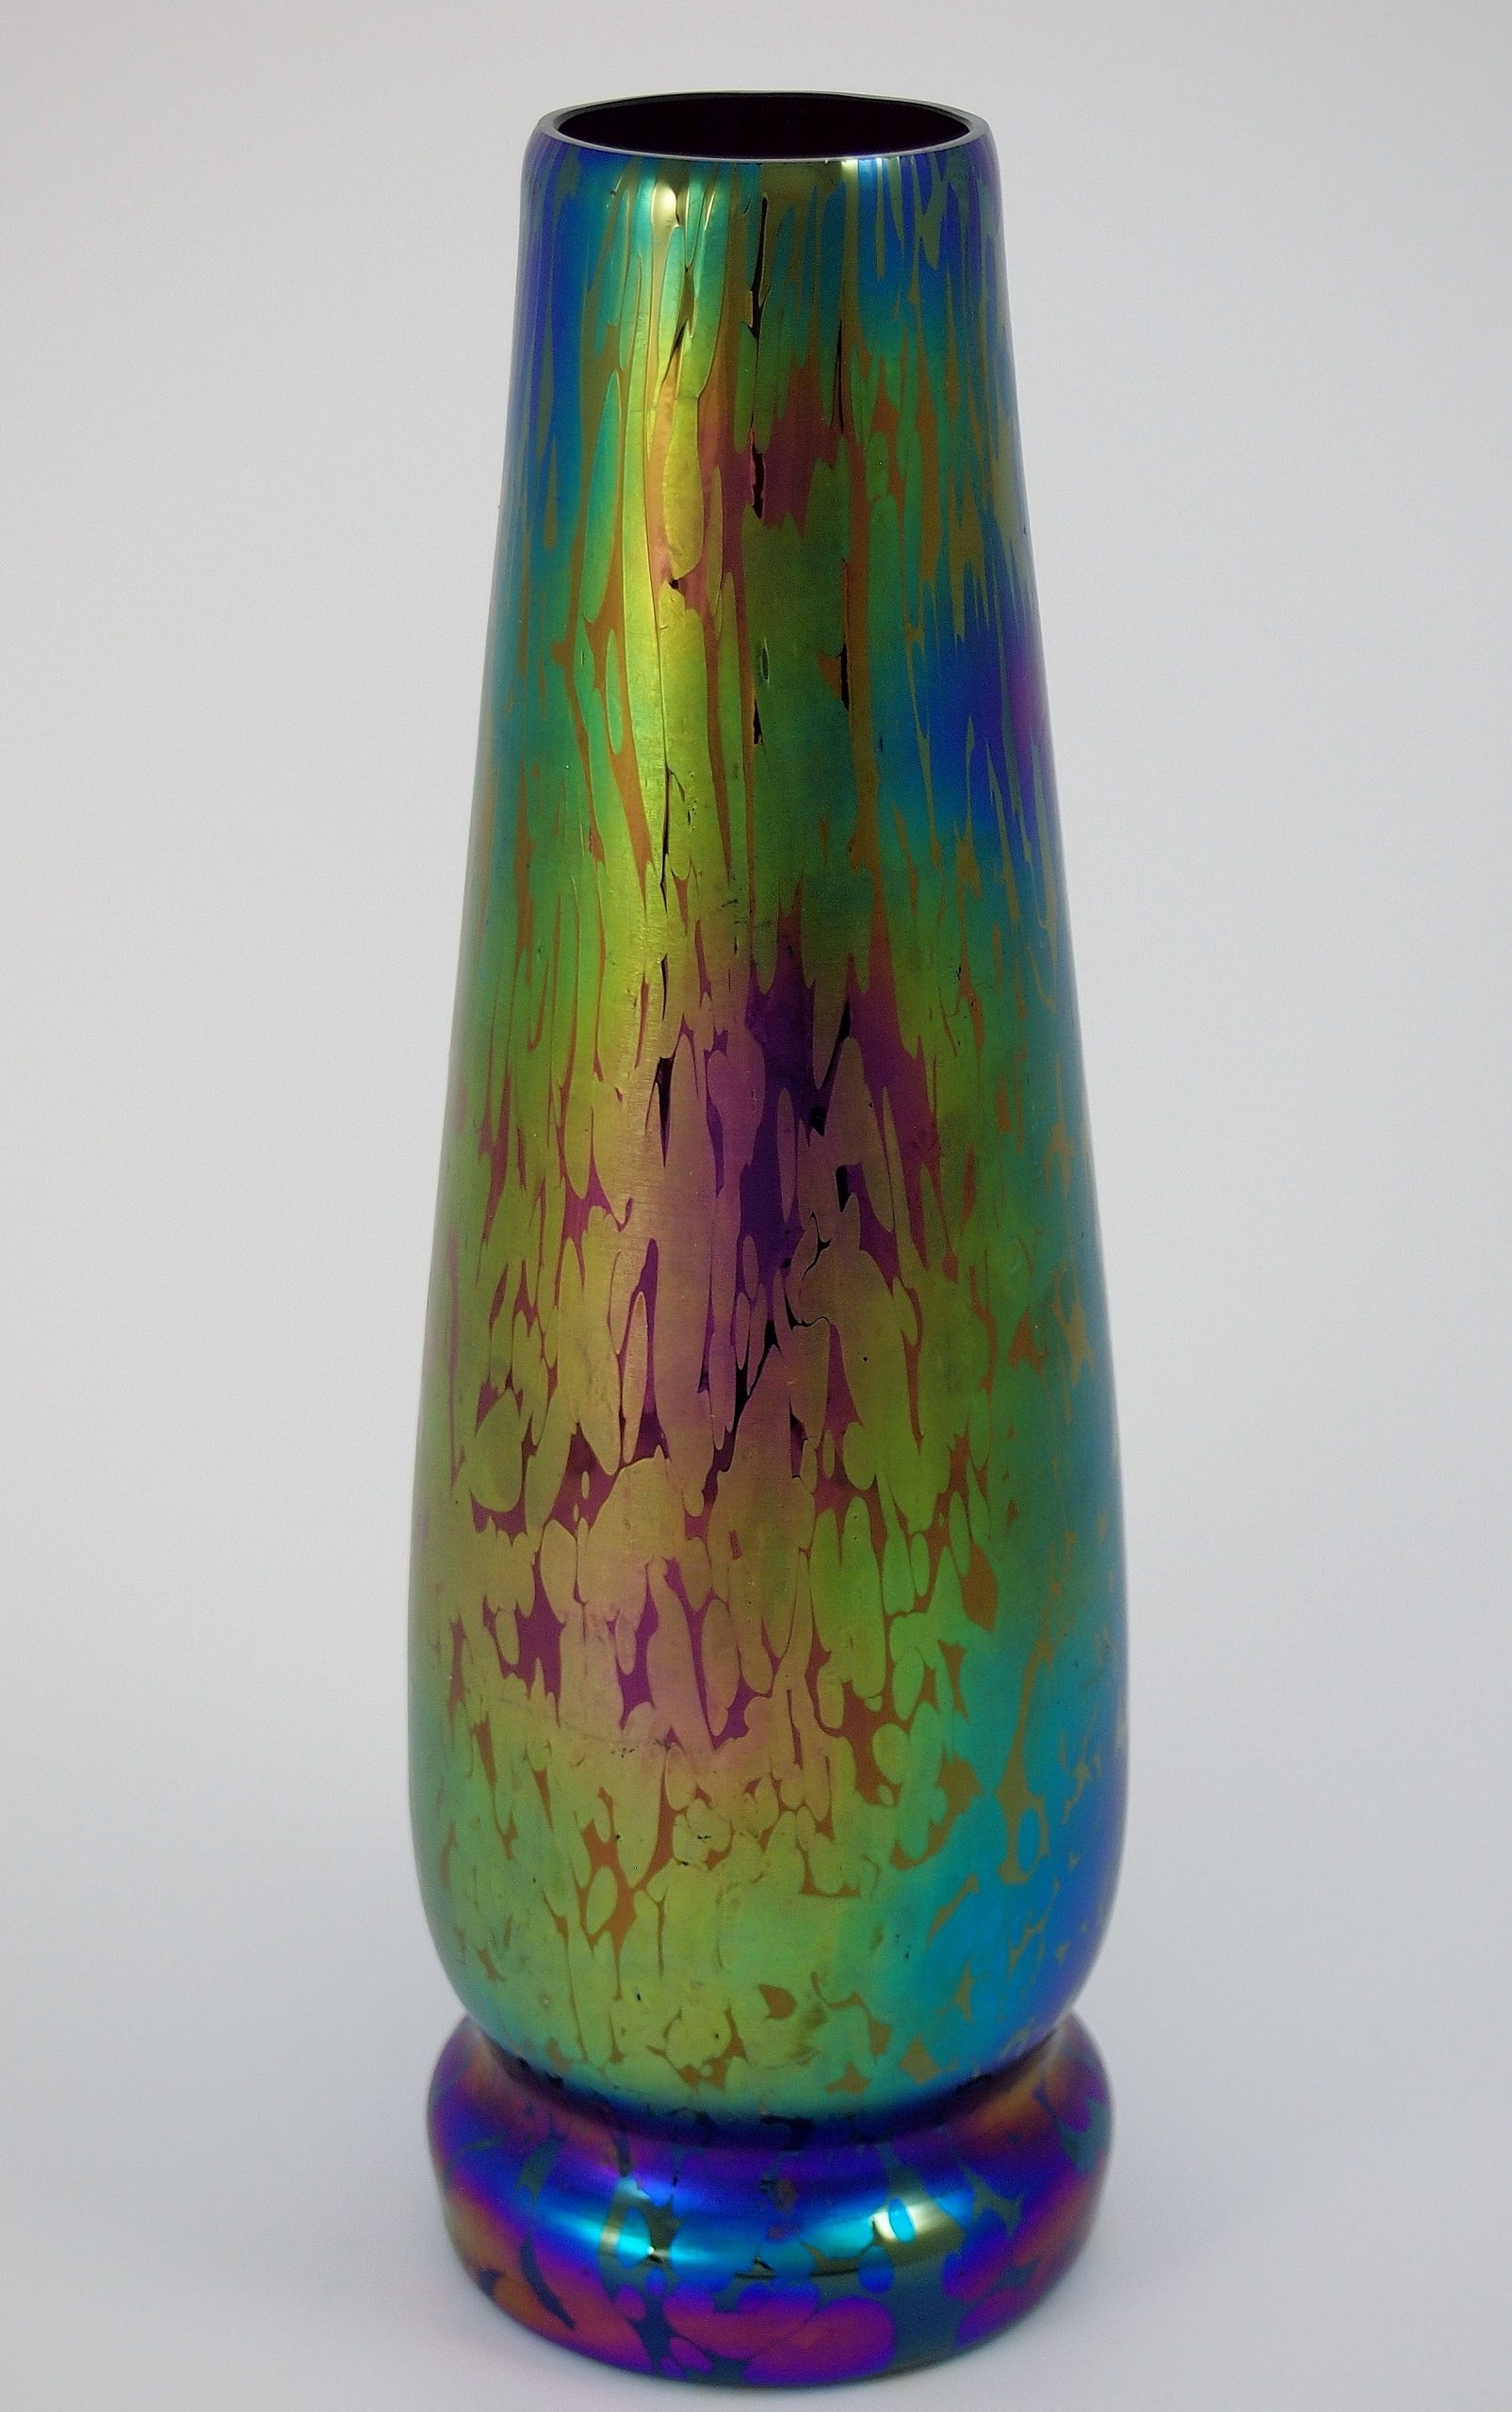 Iridescent Glass Vase By Kralik Nouveau Deco Arts